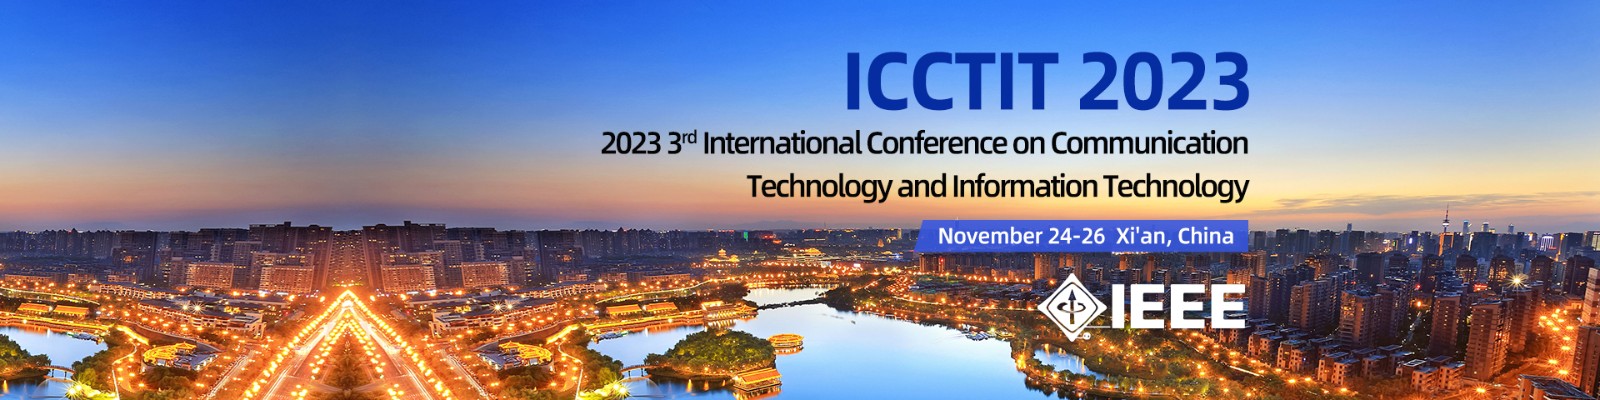 2023年11月西安ICCTIT-会议官网轮播图英.jpg